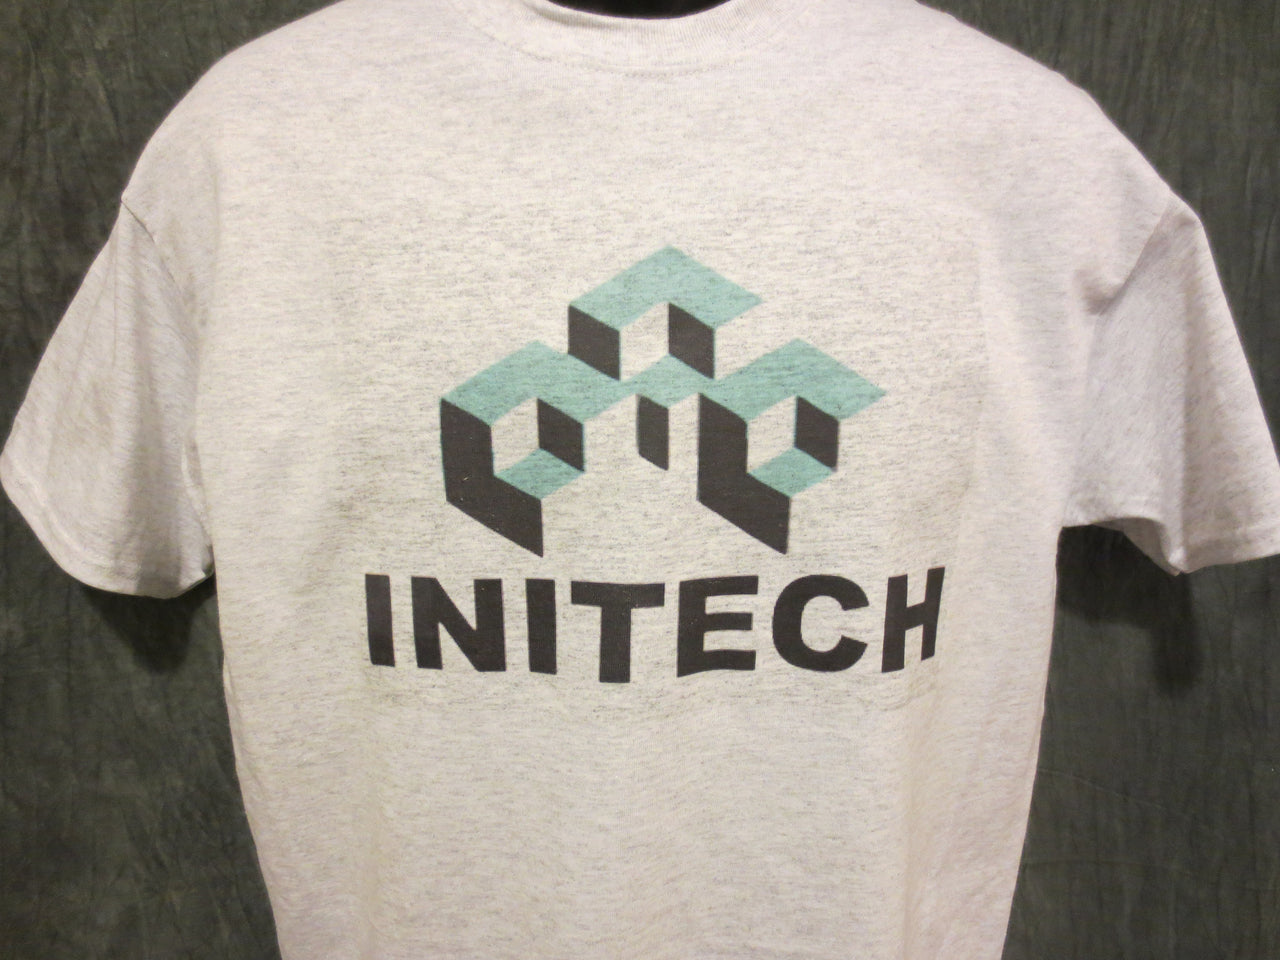 Initech Tshirt and Mug Comb - TshirtNow.net - 4